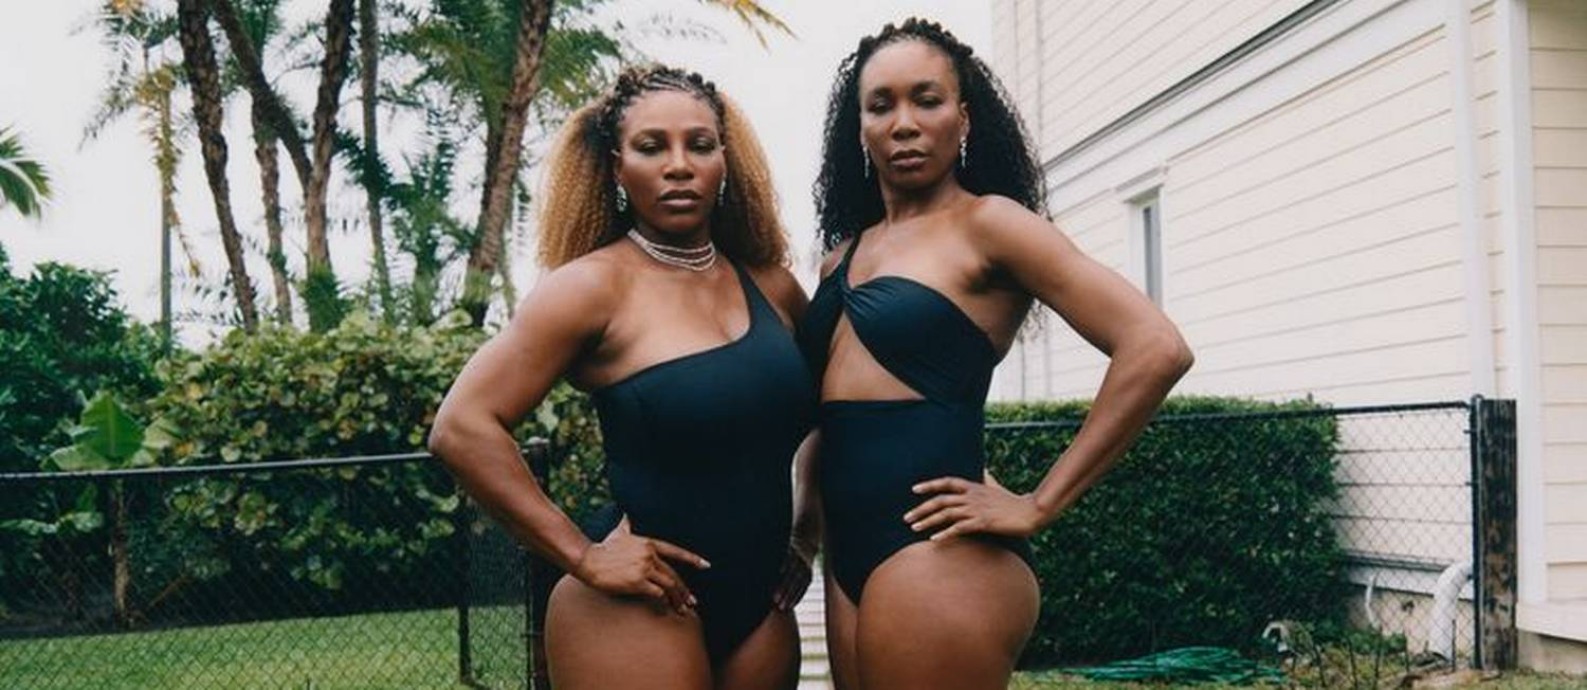 Serena e Venus Williams posam para ensaio da revista "Harper's Bazzar" Foto: reprodução / Harper's Bazzar